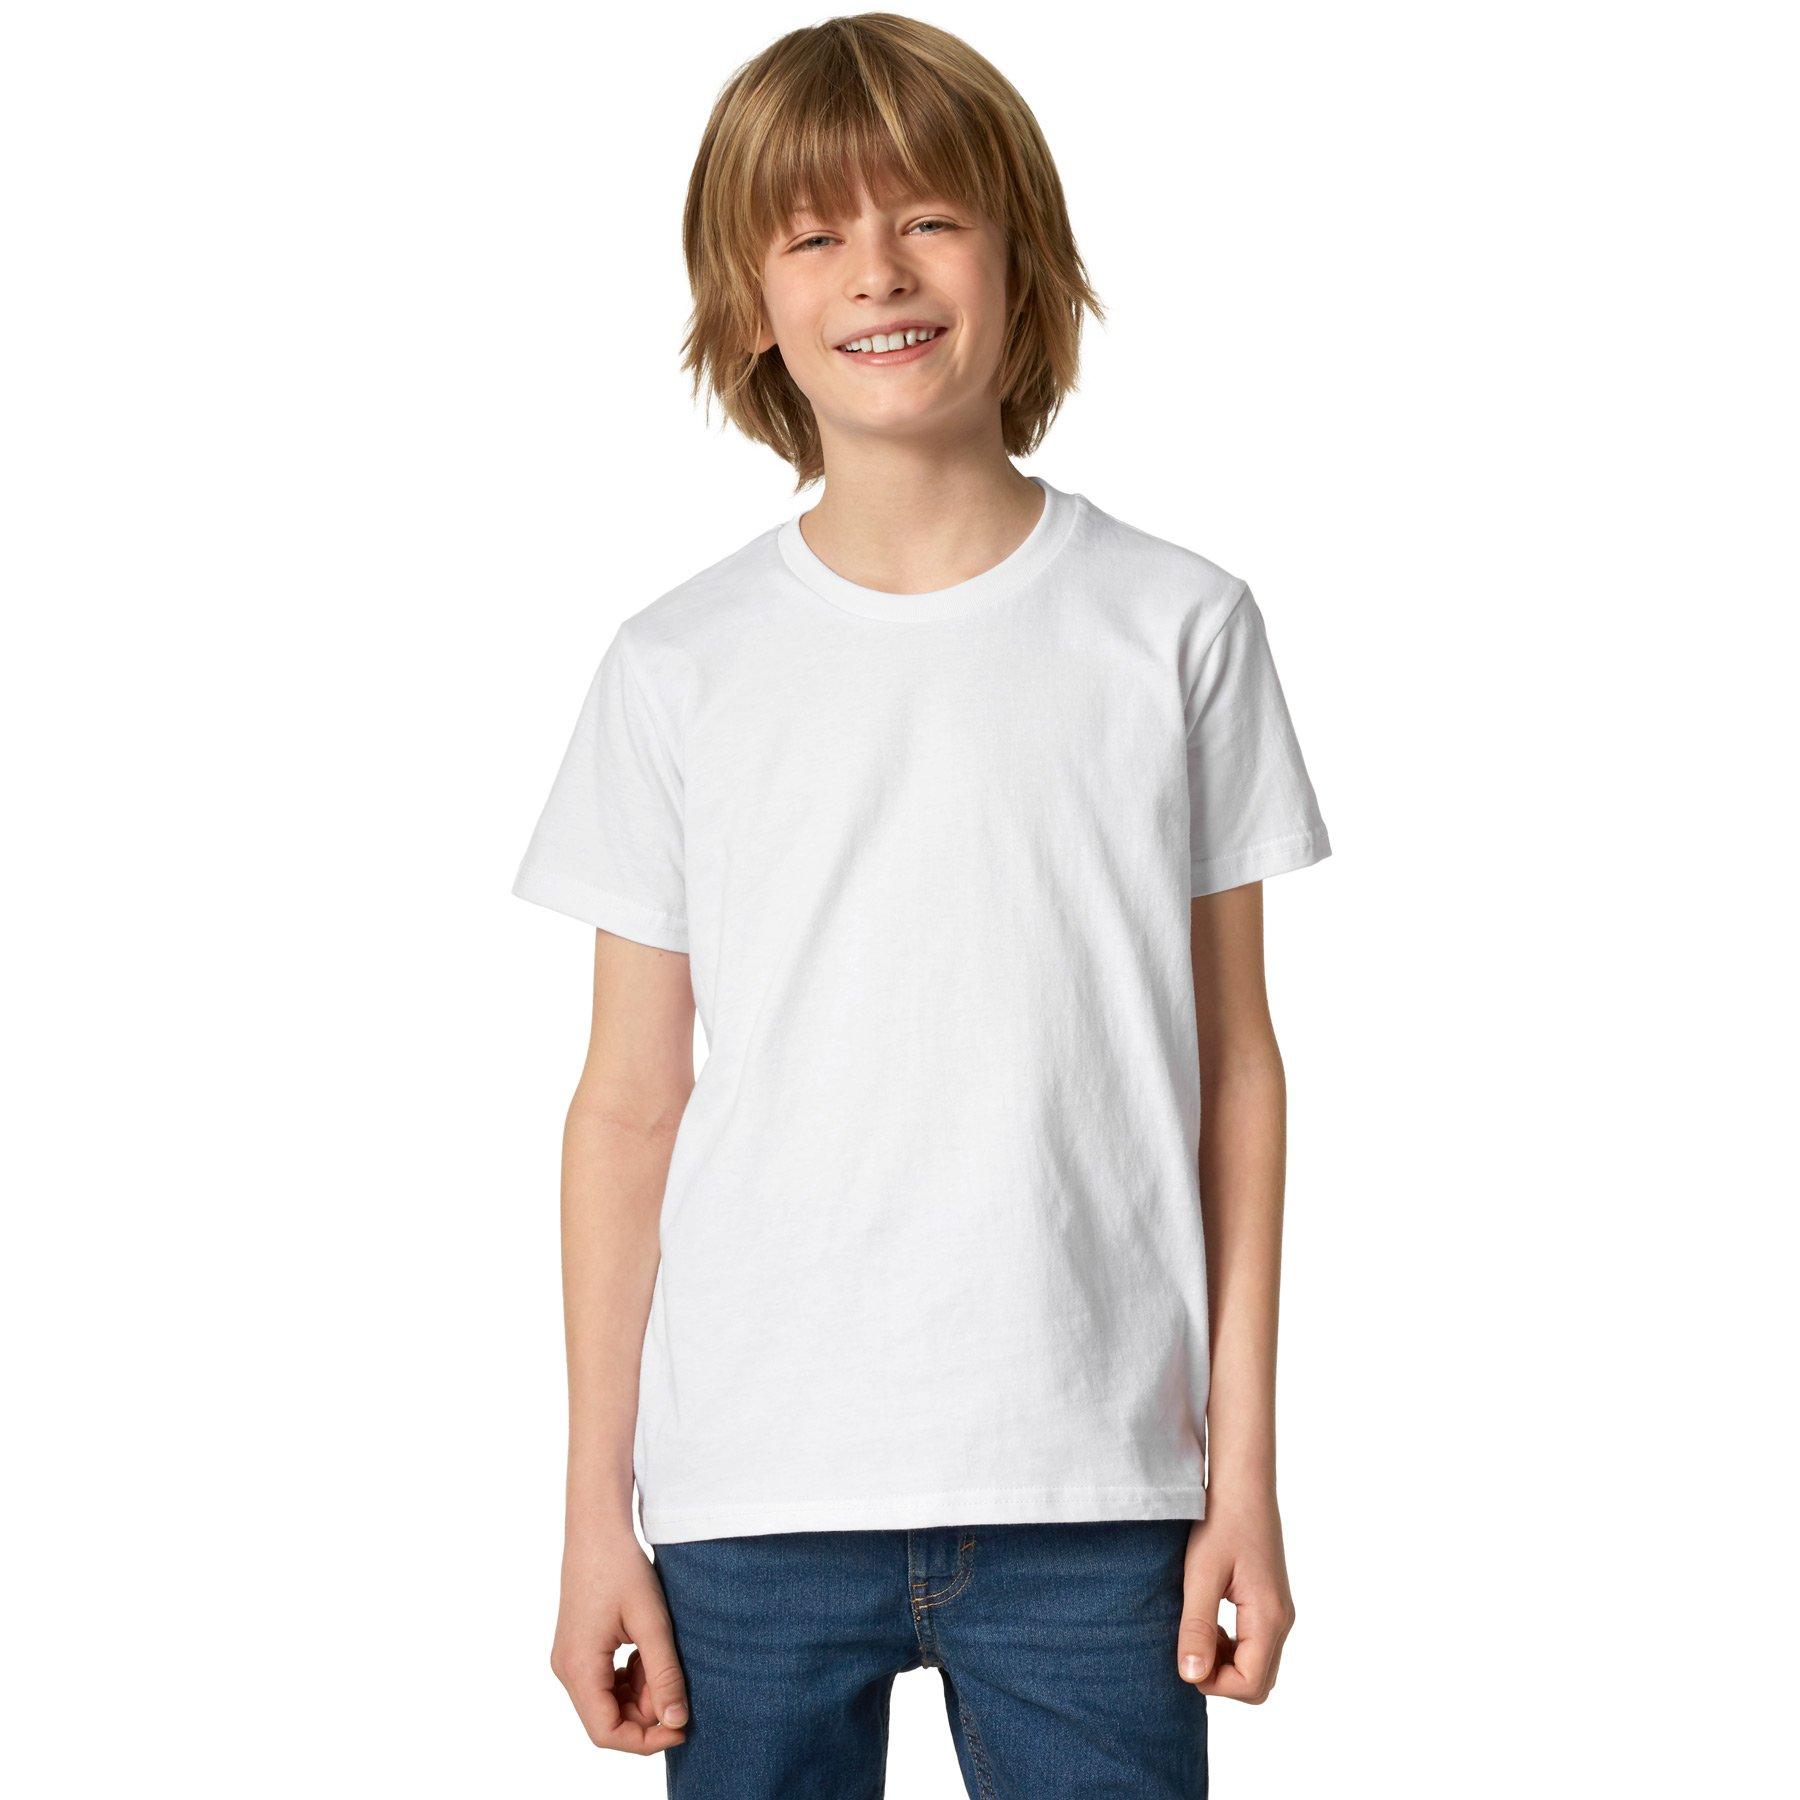 T-shirt Kinder Jungen Weiss 128 von Tectake